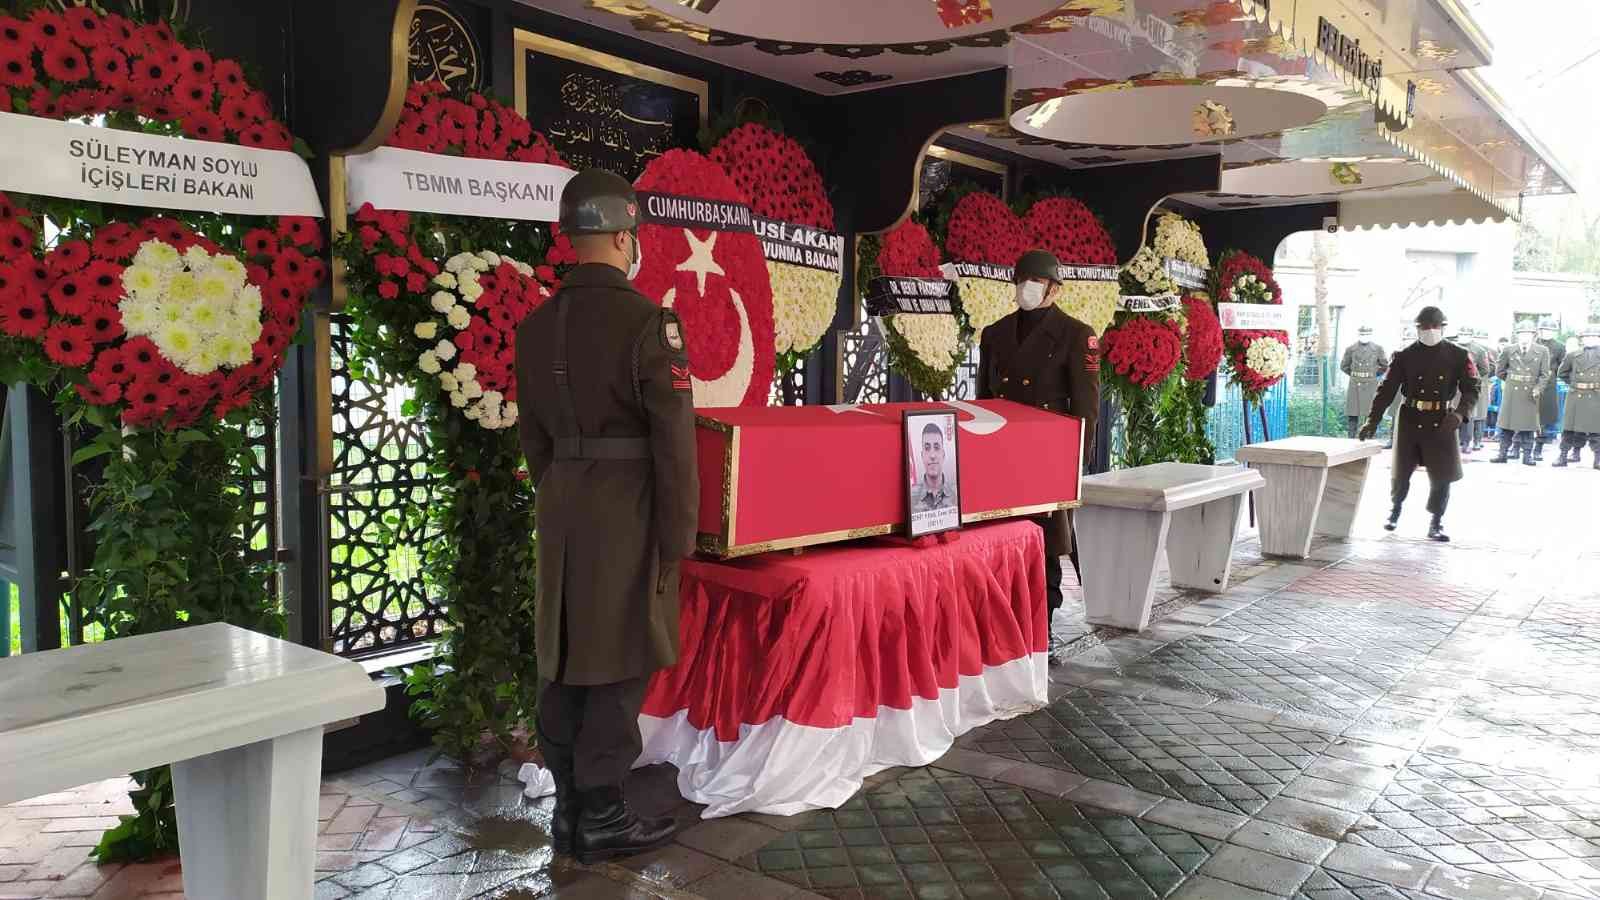 Şehit Piyade Onbaşı Enes Koç’un cenazesi baba ocağına getirildi #istanbul